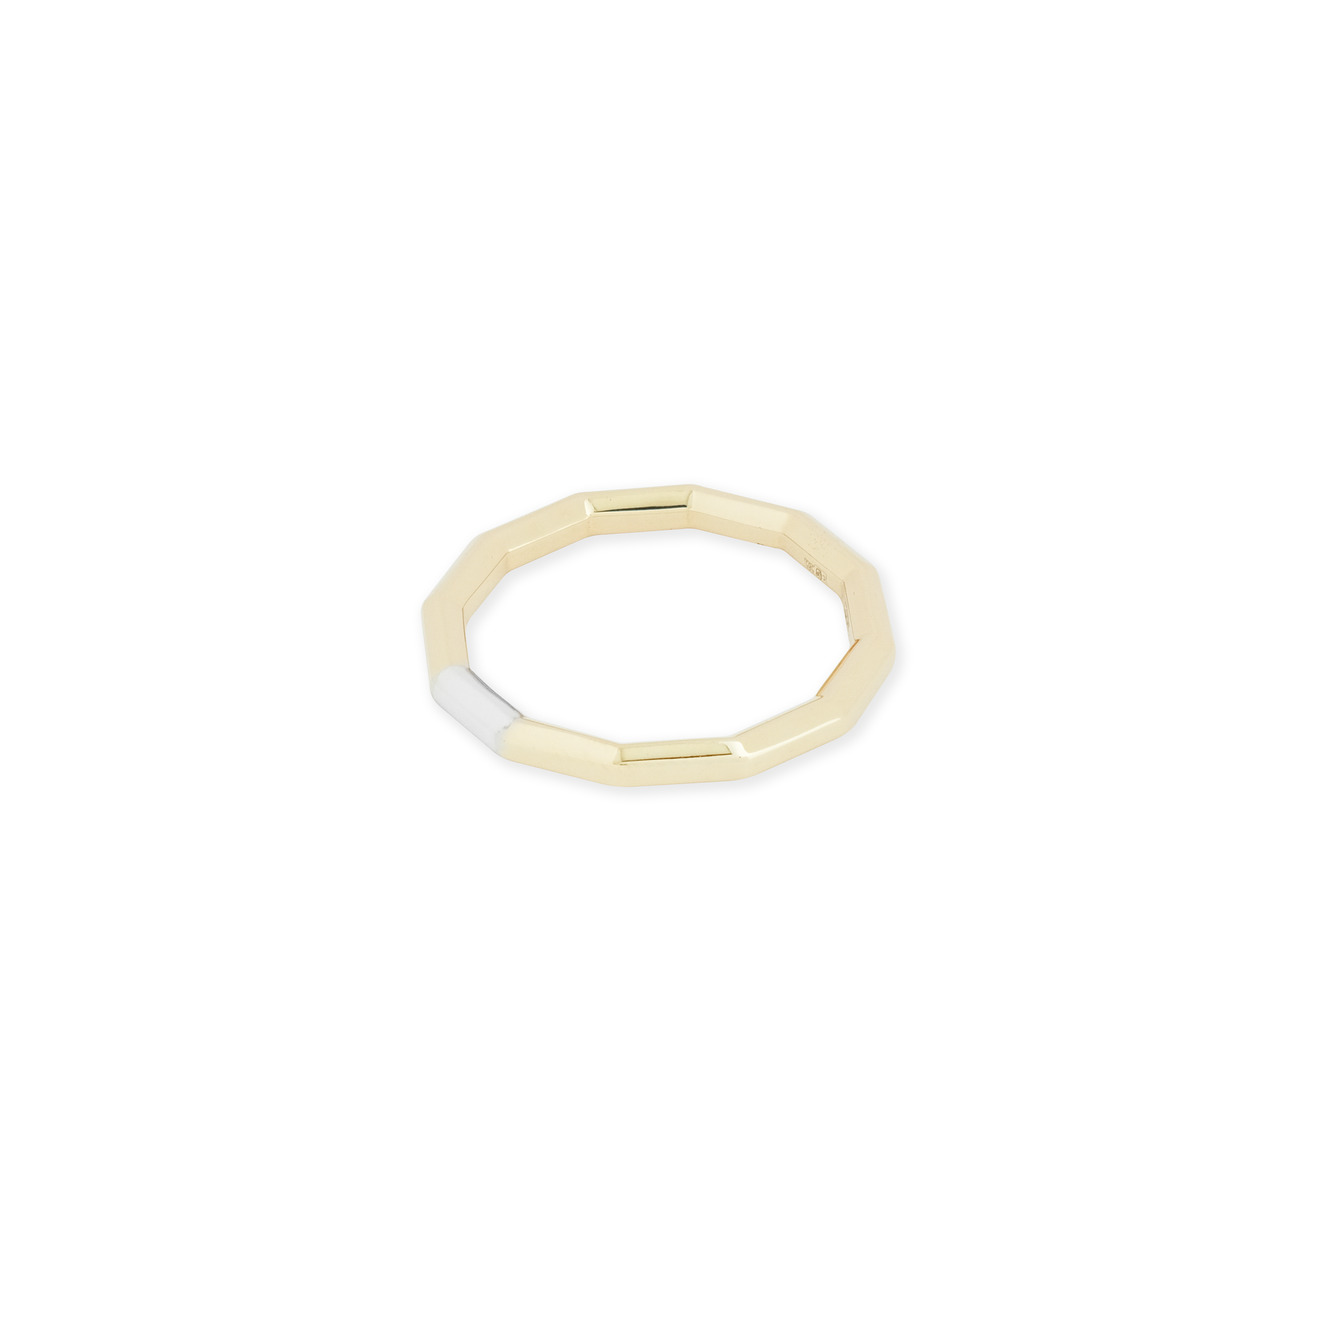 Avgvst Обручальное кольцо из золота Double Gold с сегментом из белого золота avgvst кольцо мюзле из лимонного золота